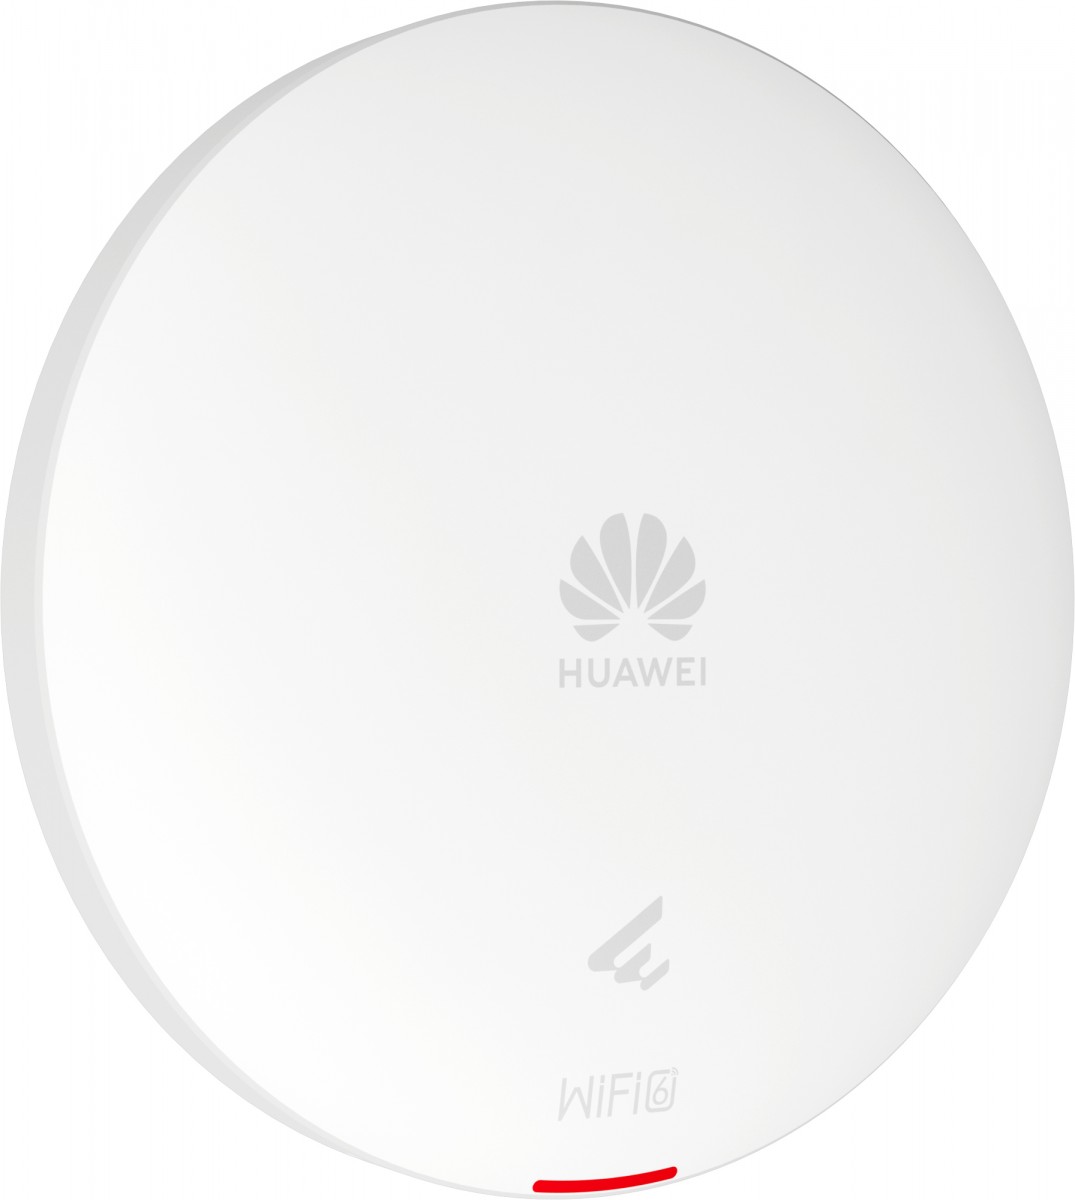 Huawei AP362 (50085706),Settled AP, Wi-Fi 6, indoor, Dual Radio(2.4G/5GHz), 2*2/2*2 MU-MIMO